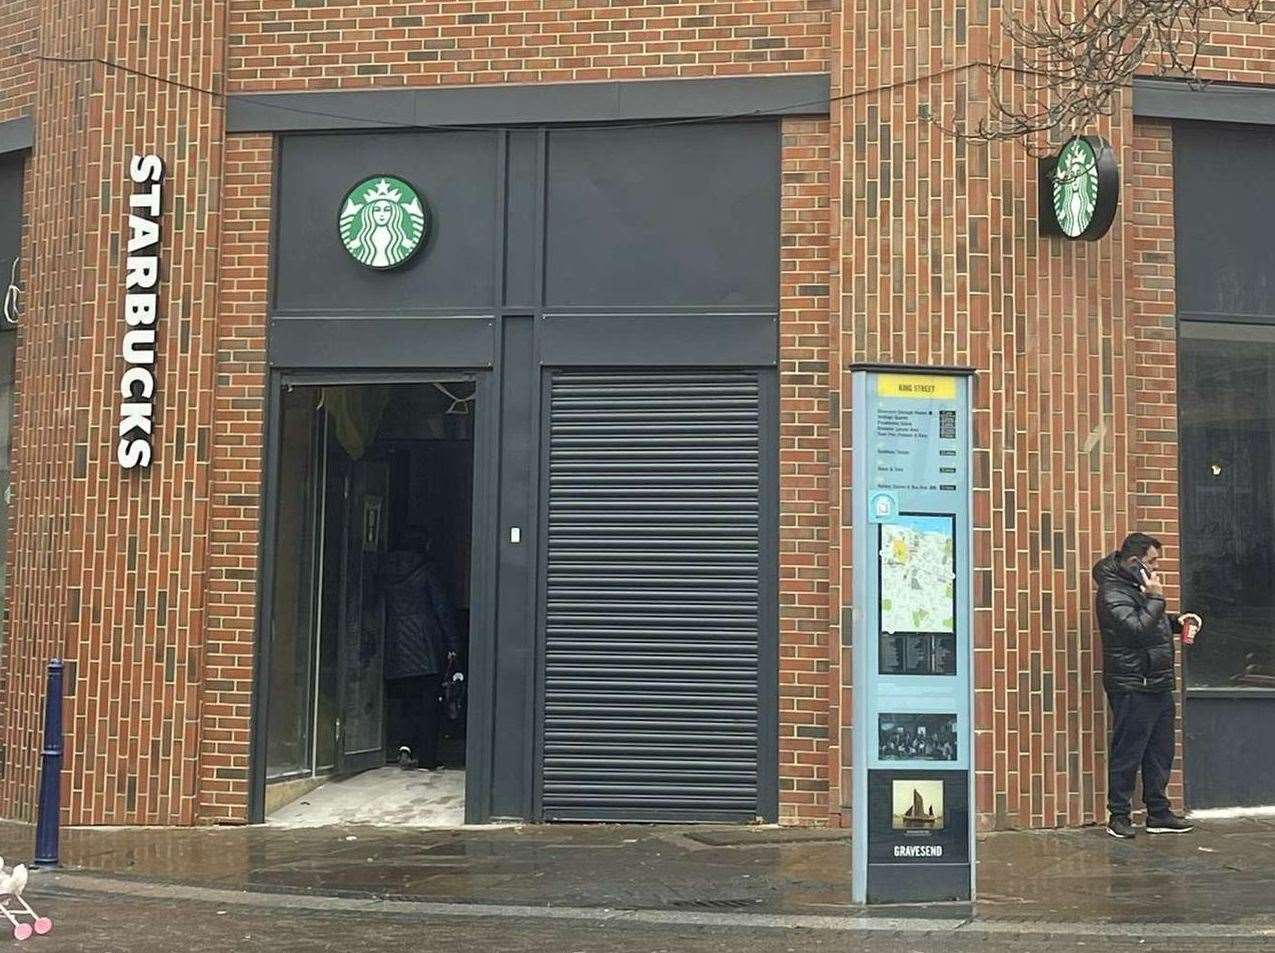 Starbucks is starting to take shape